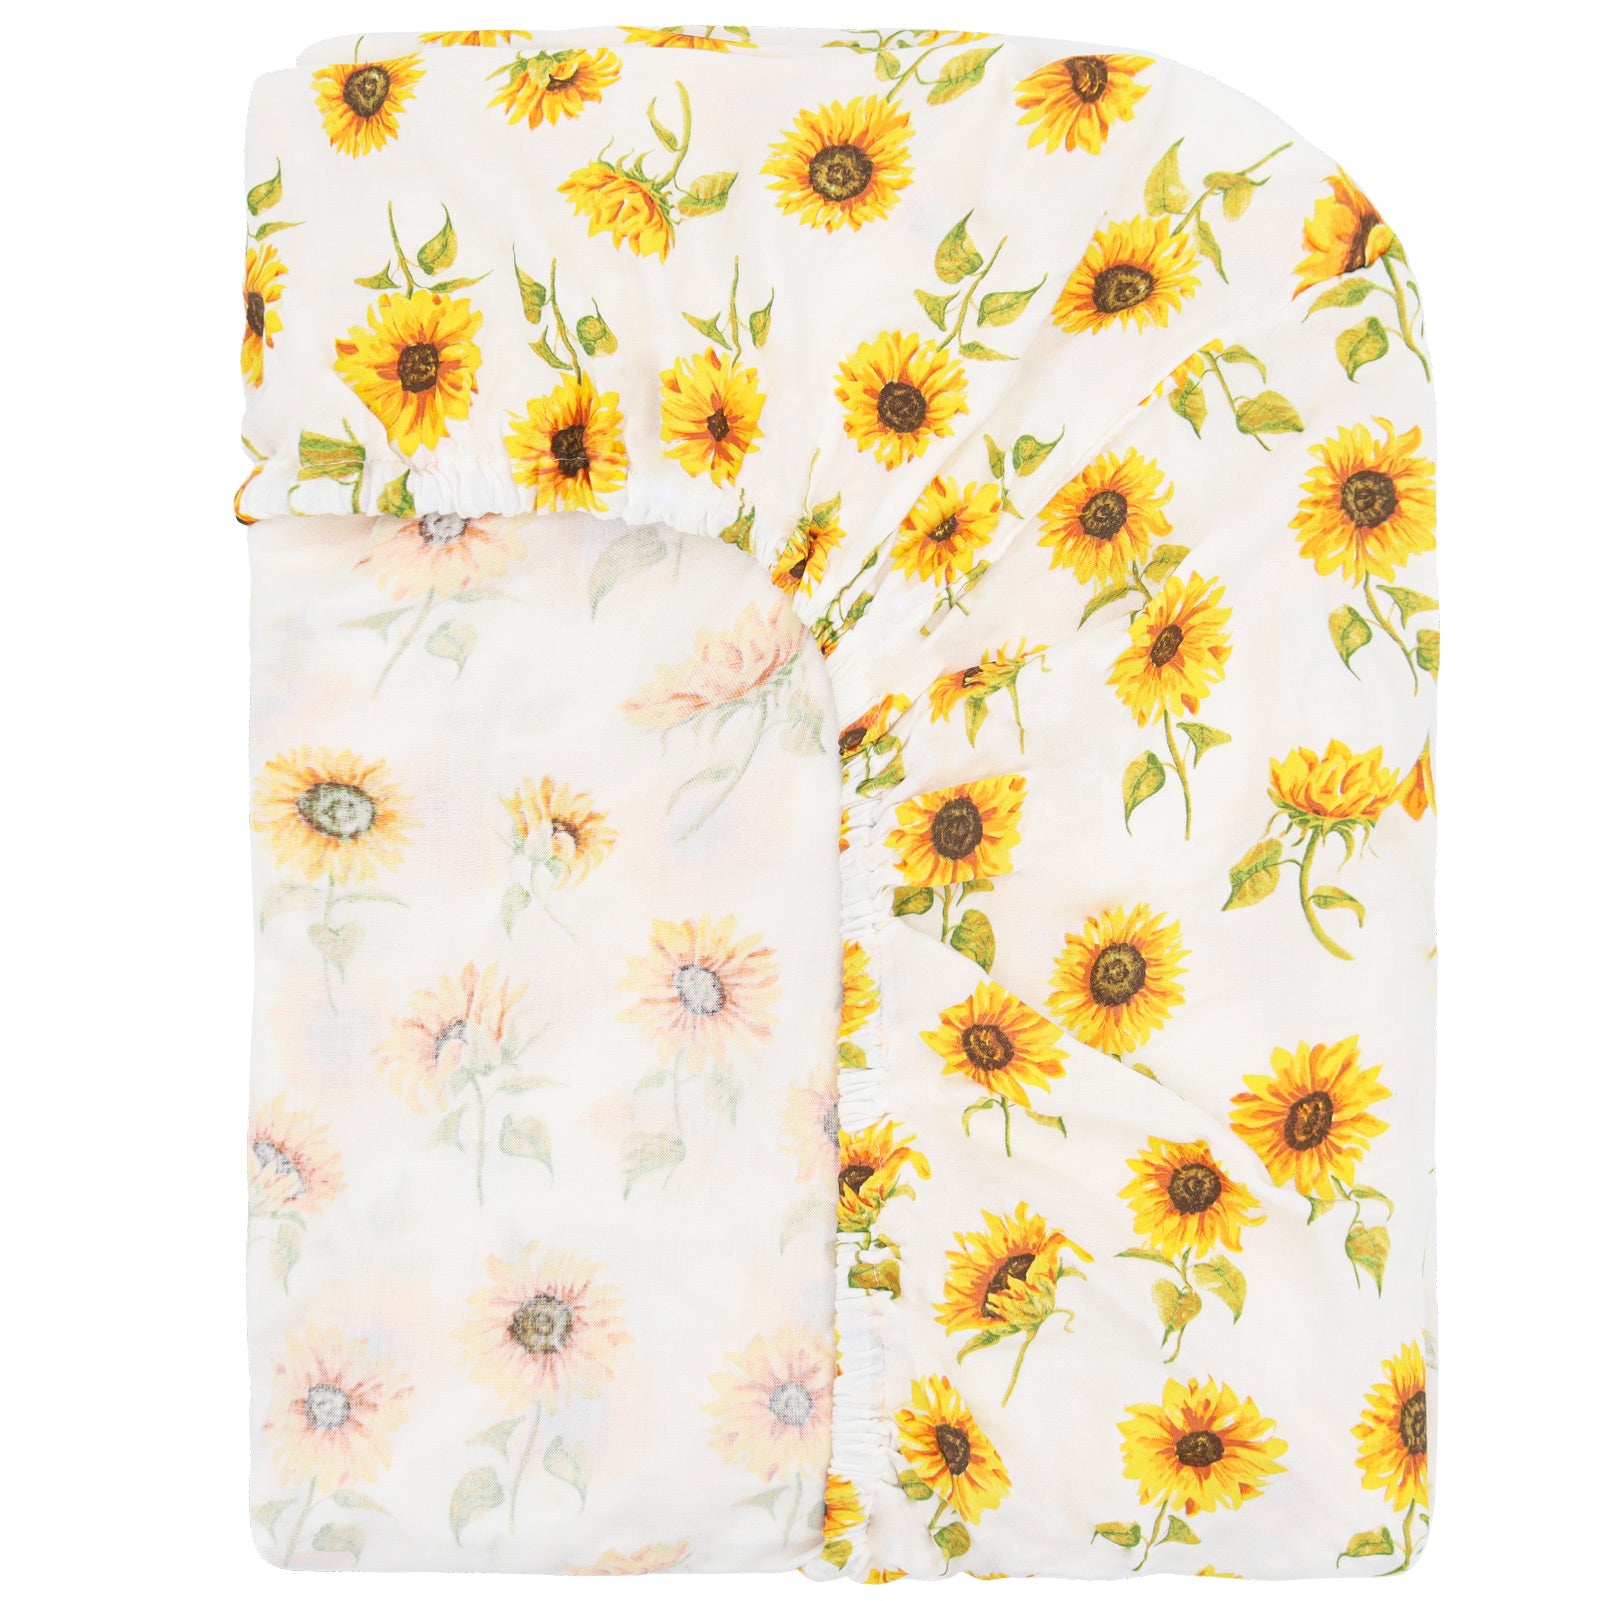 Sunflower Kisses (Crib Sheet)